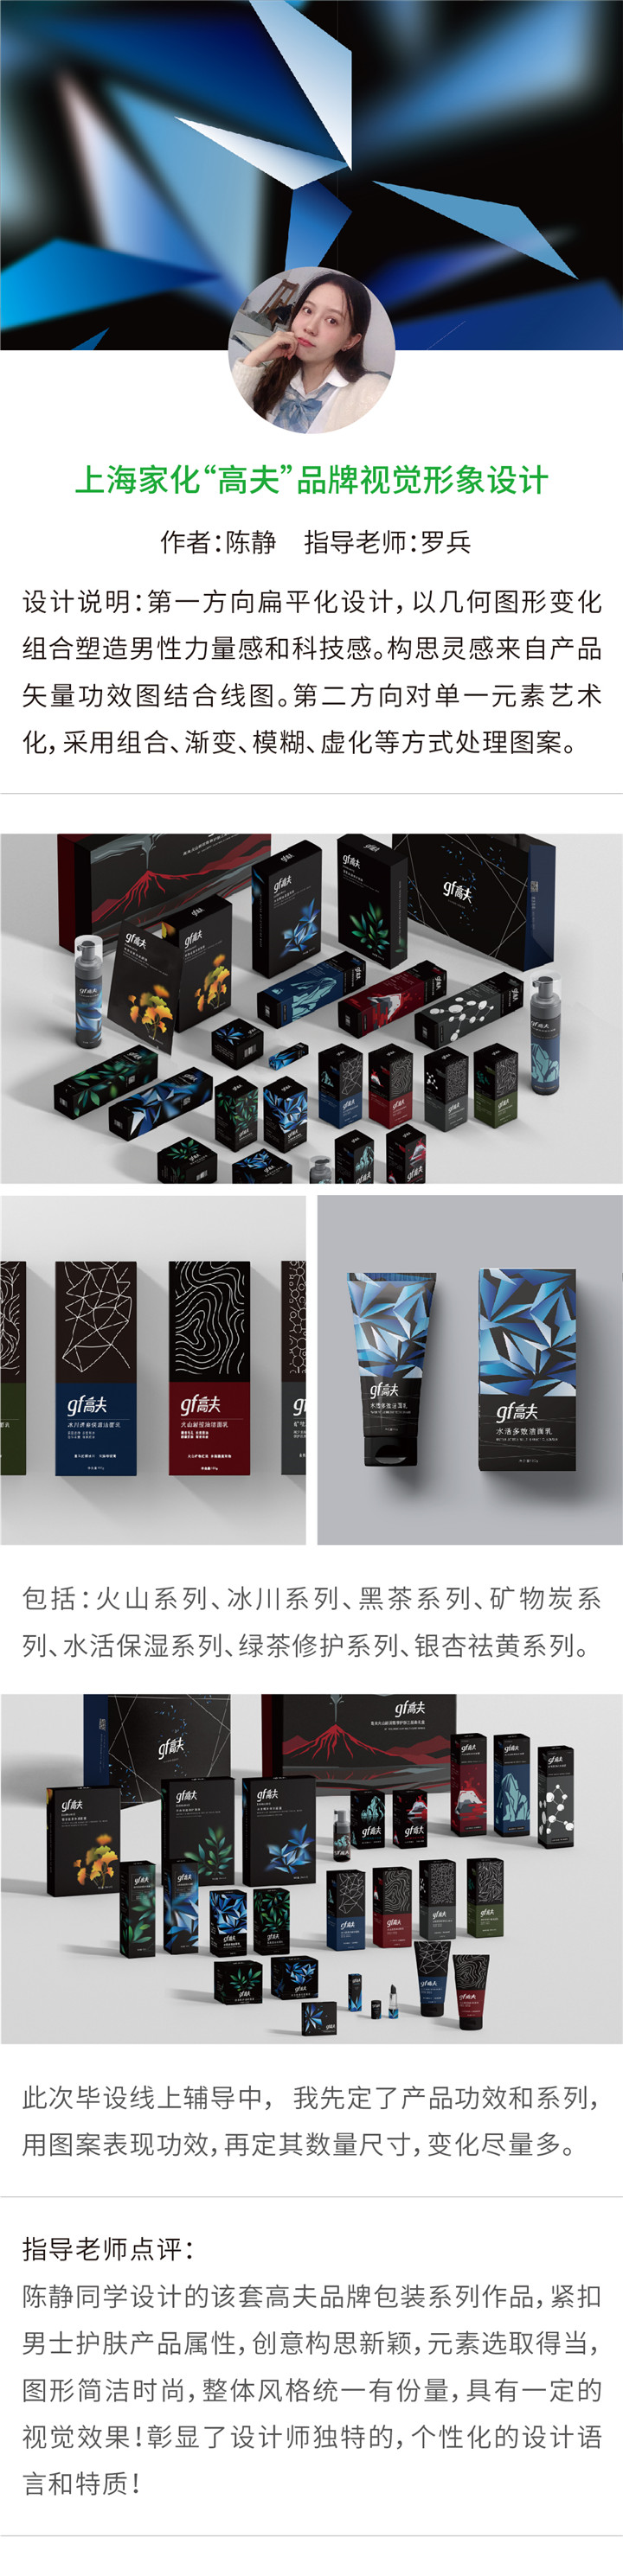 视觉传达——上海家化“高夫”品牌视觉设计-设计中国